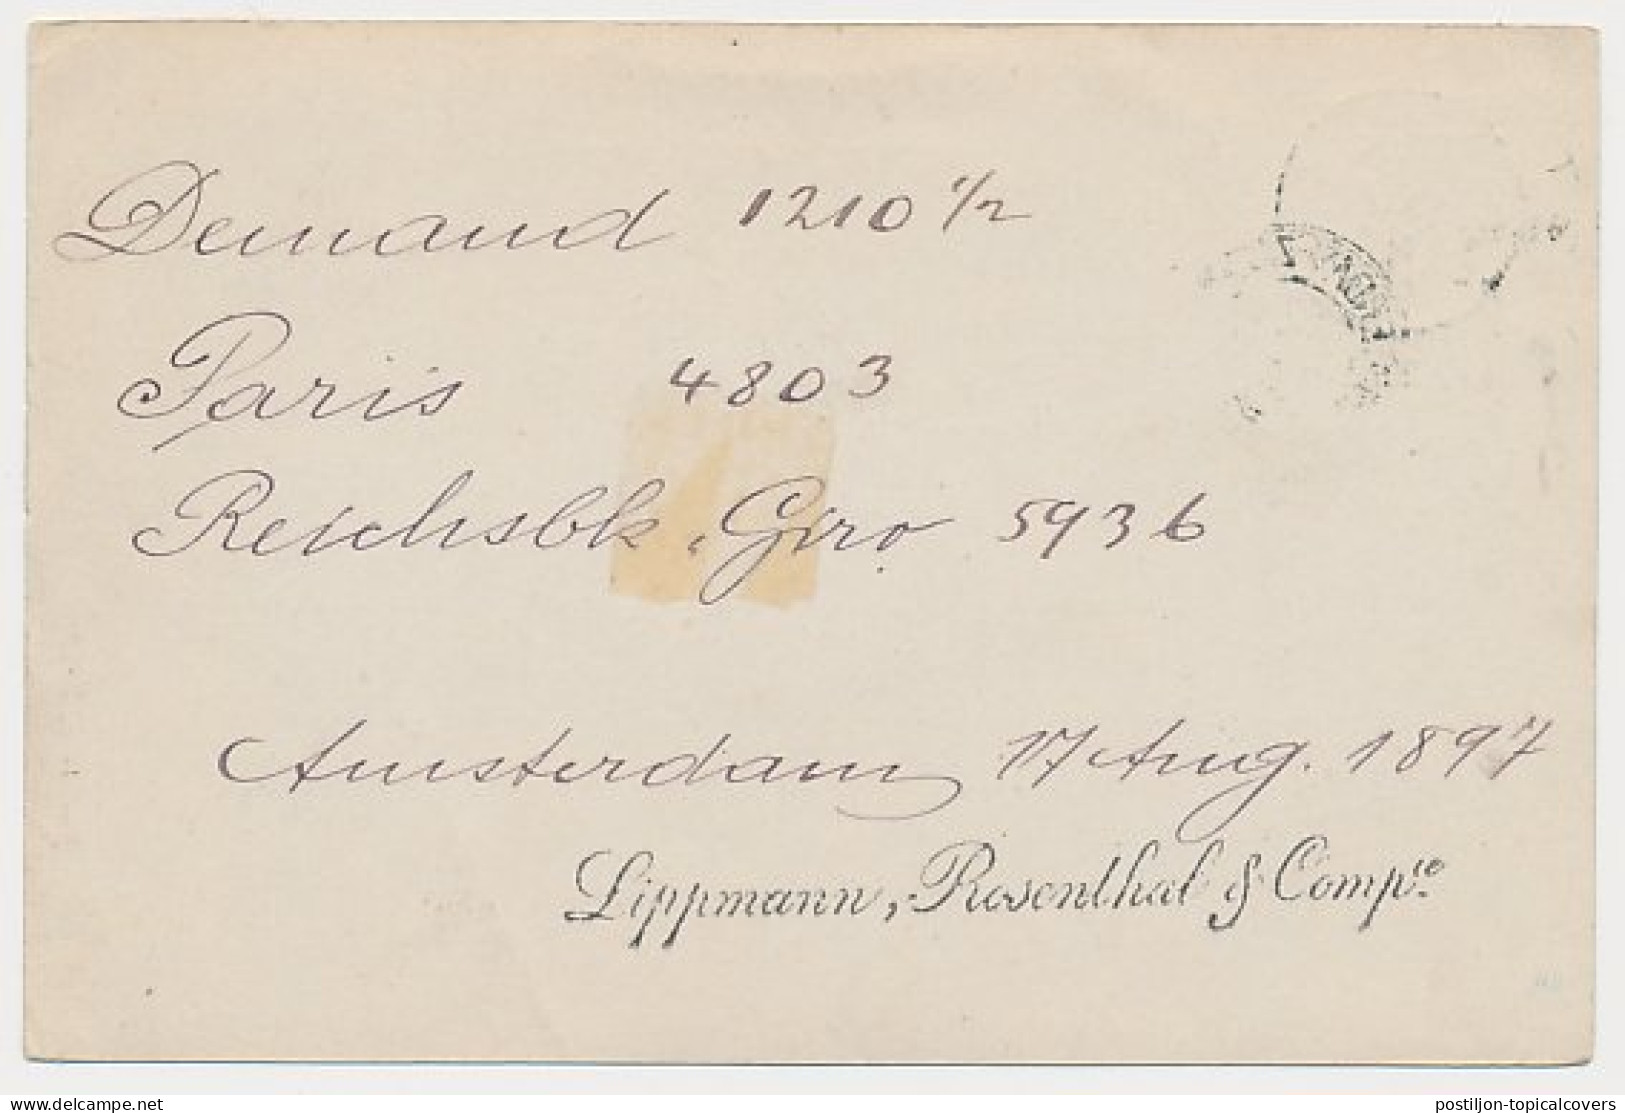 Trein Kleinrondstempel Amsterdam - Zutphen V 1897 - Storia Postale